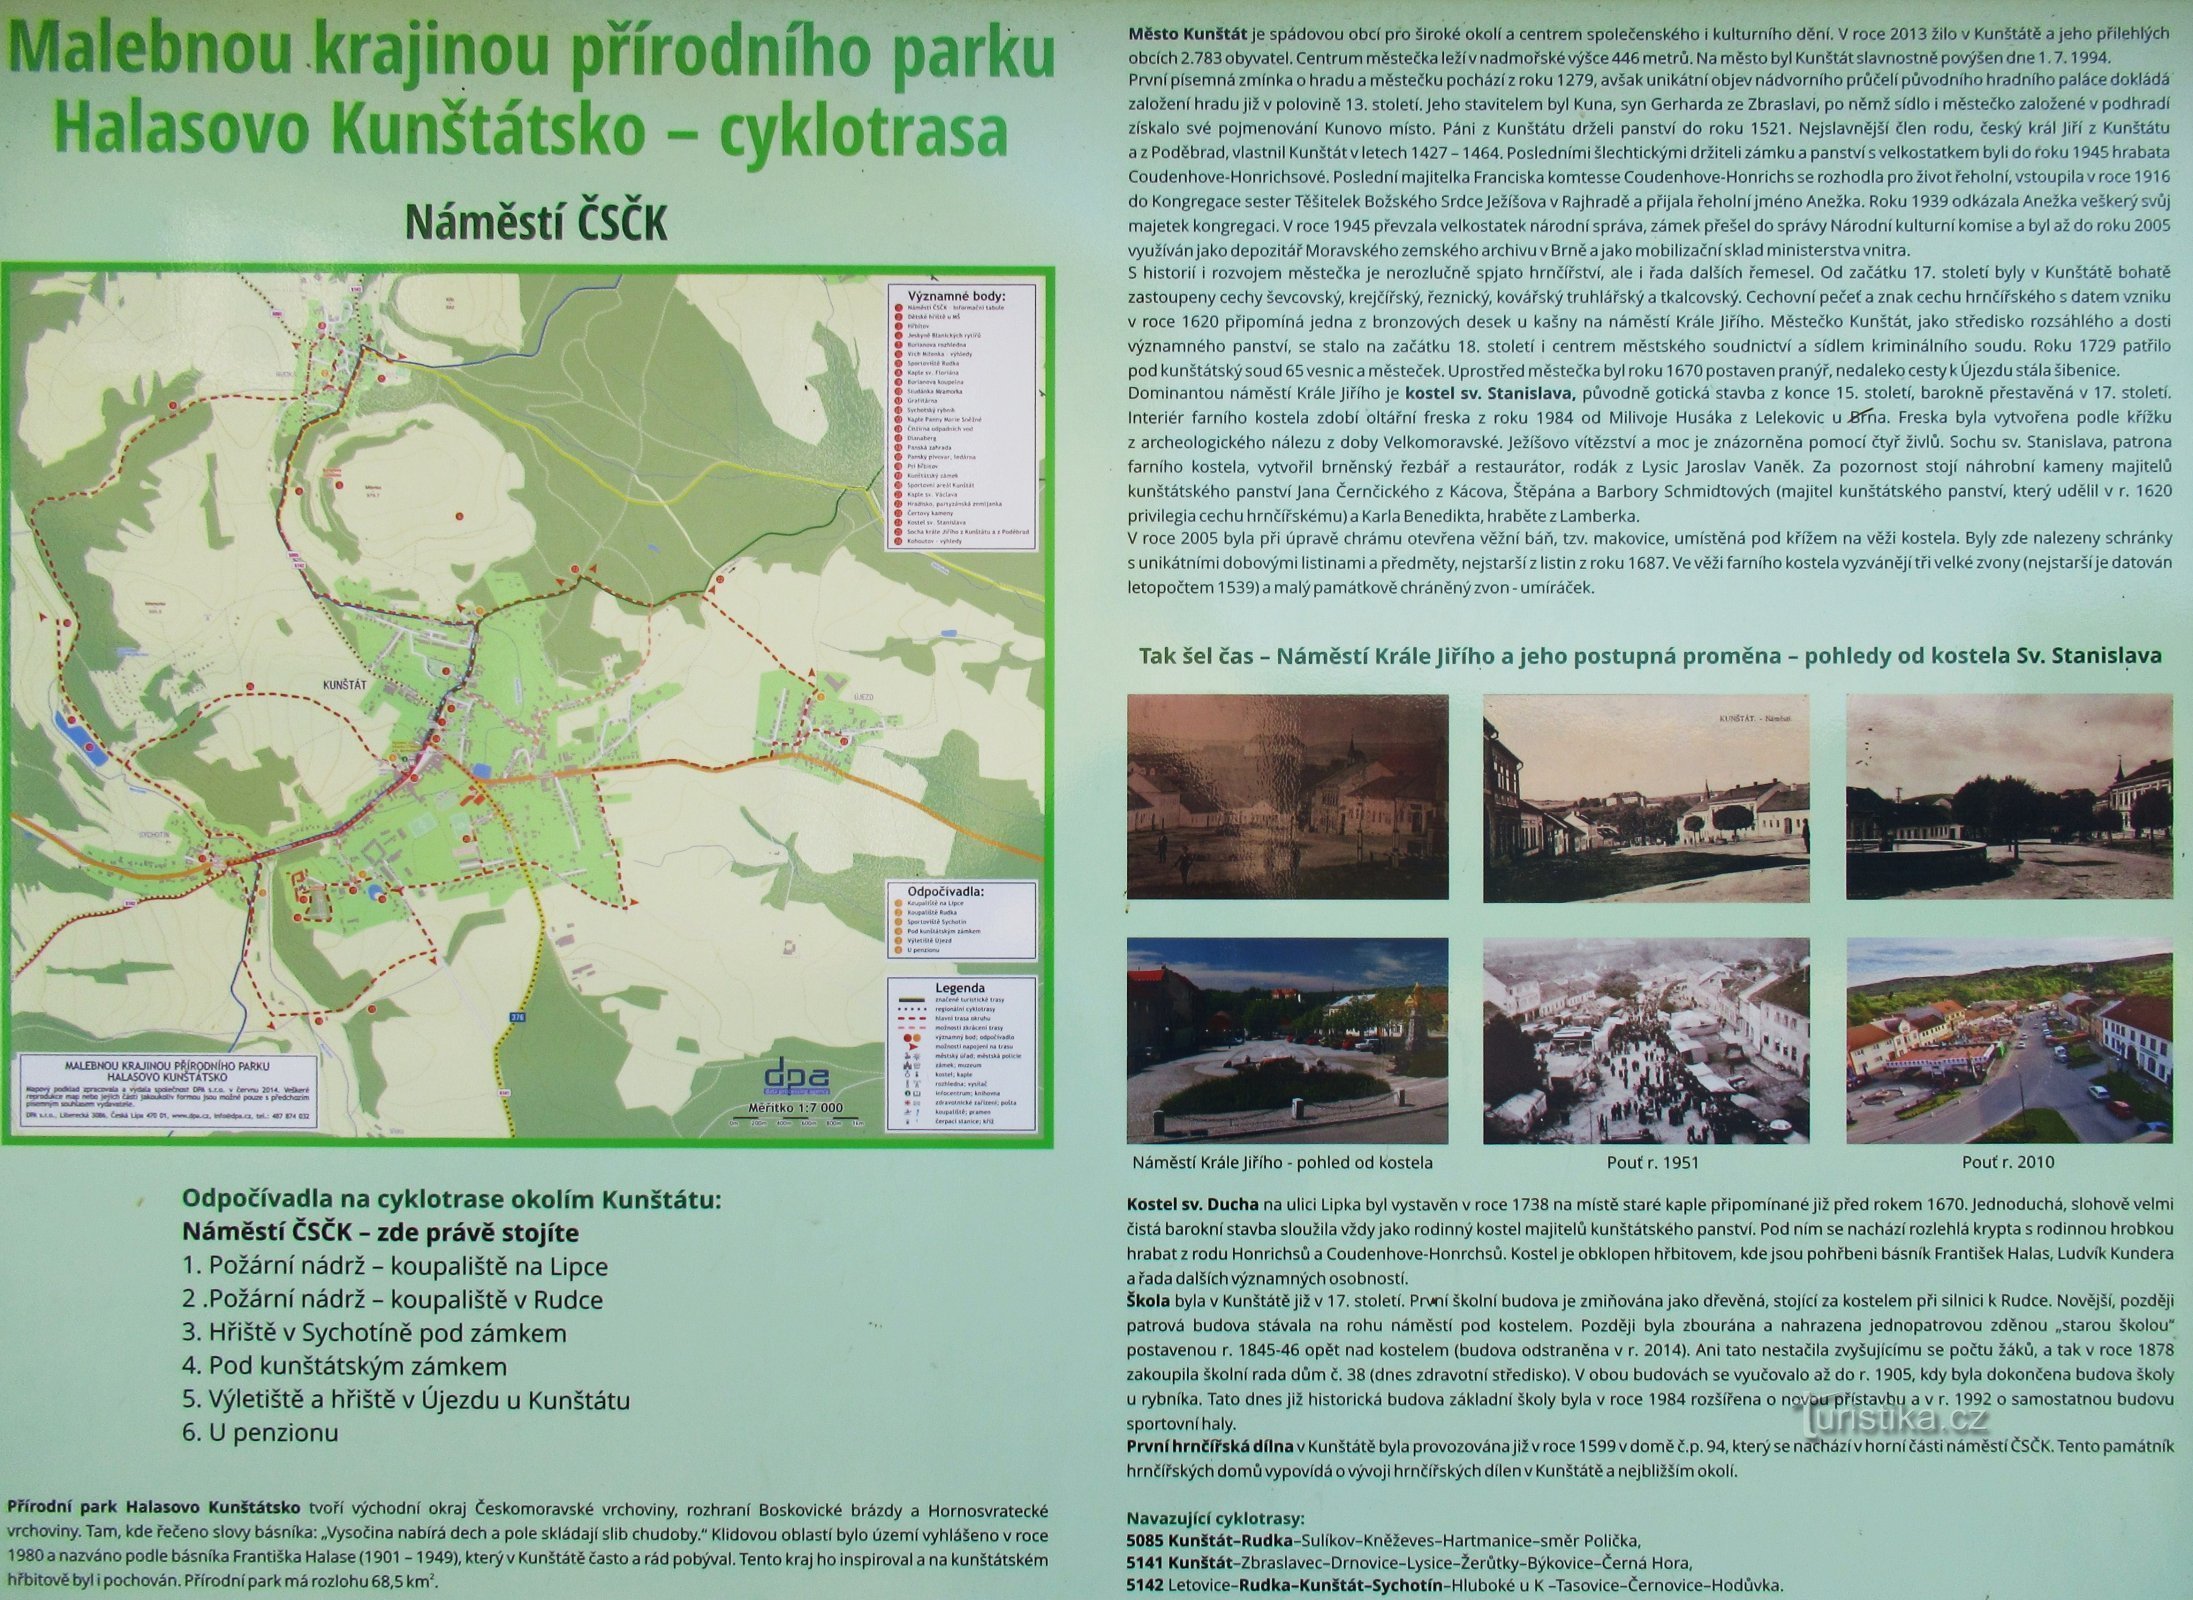 Przez park przyrody Halasovo Kunštátsko do części lokalnej - Rudky